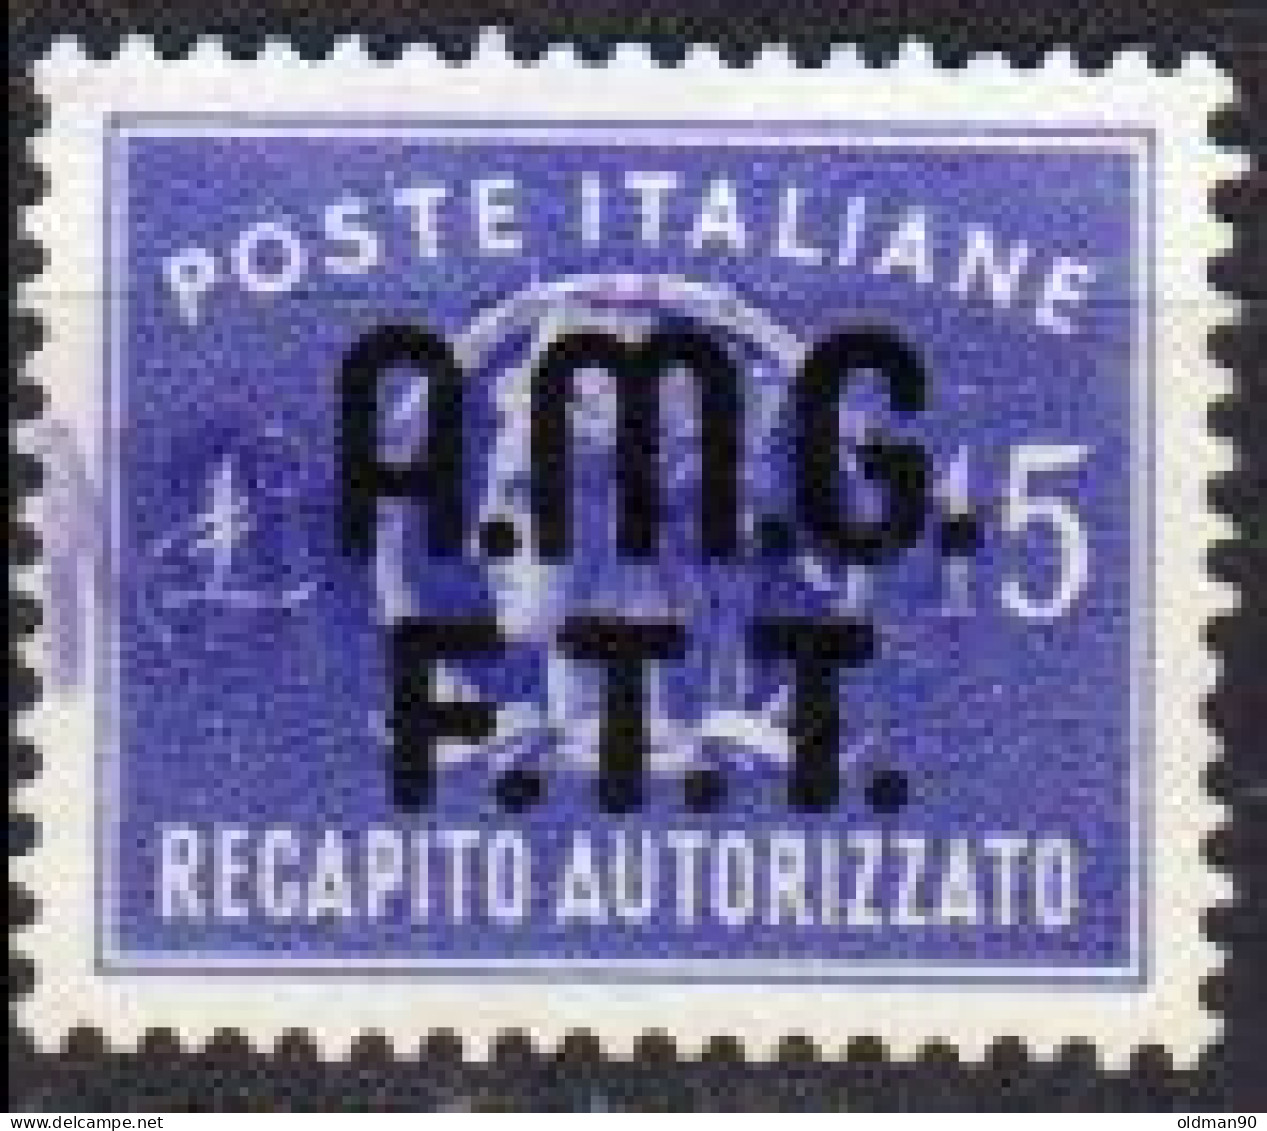 Italia-A-0742: TRIESTE - Zona A - R. A. 1949 (o) Used - Uno solo - Qualità a vostra opiniove..